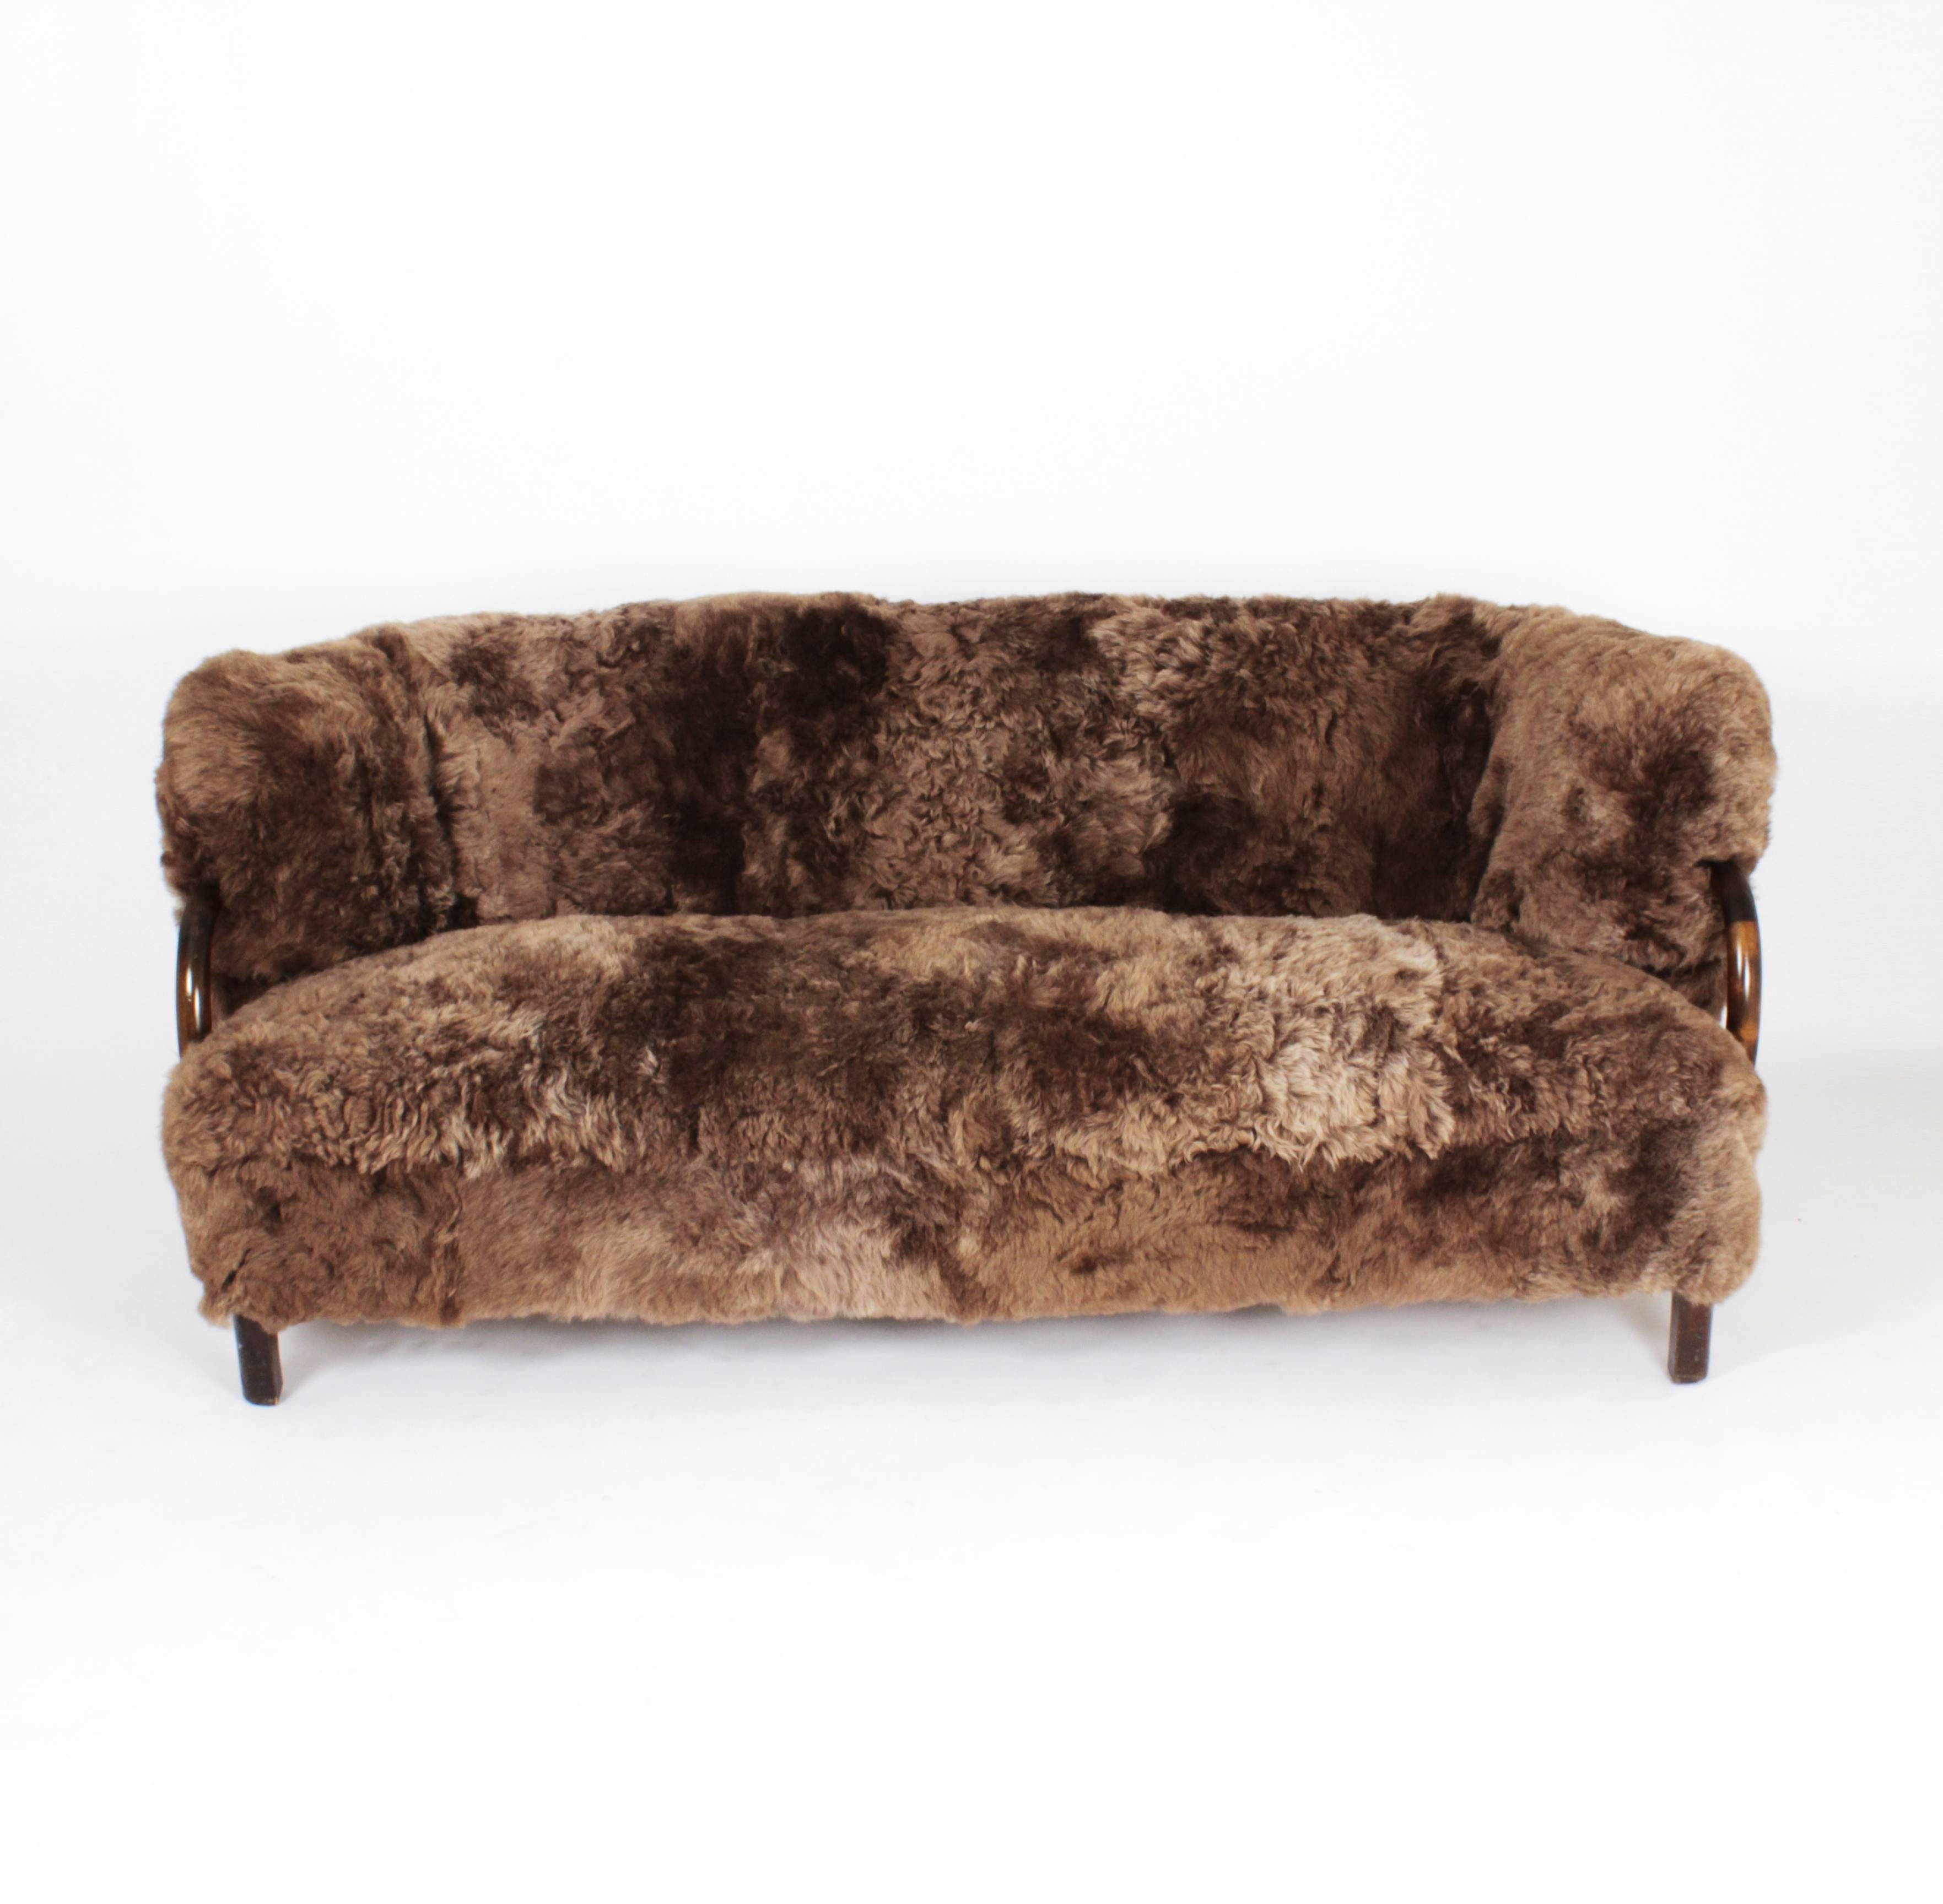 Stained Three-Seat Sofa in Brown Icelandic Sheepskin by Viggo Boesen, Denmark